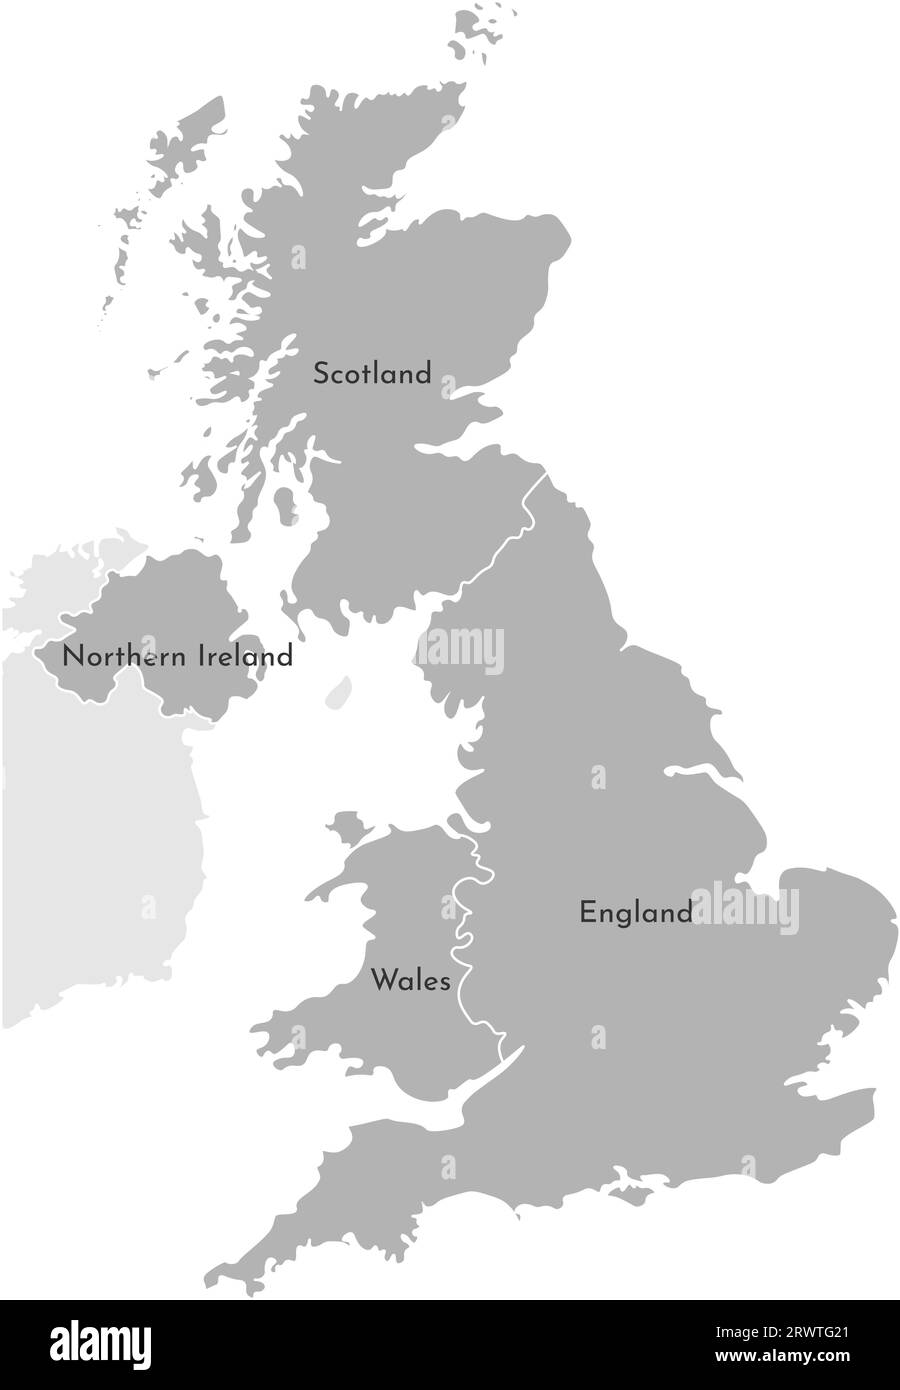 Carte simplifiée isolée par vecteur. Silhouette grise des provinces britanniques. Frontière de division administrative - Écosse, pays de Galles, Angleterre, Irlande du Nord. W Illustration de Vecteur